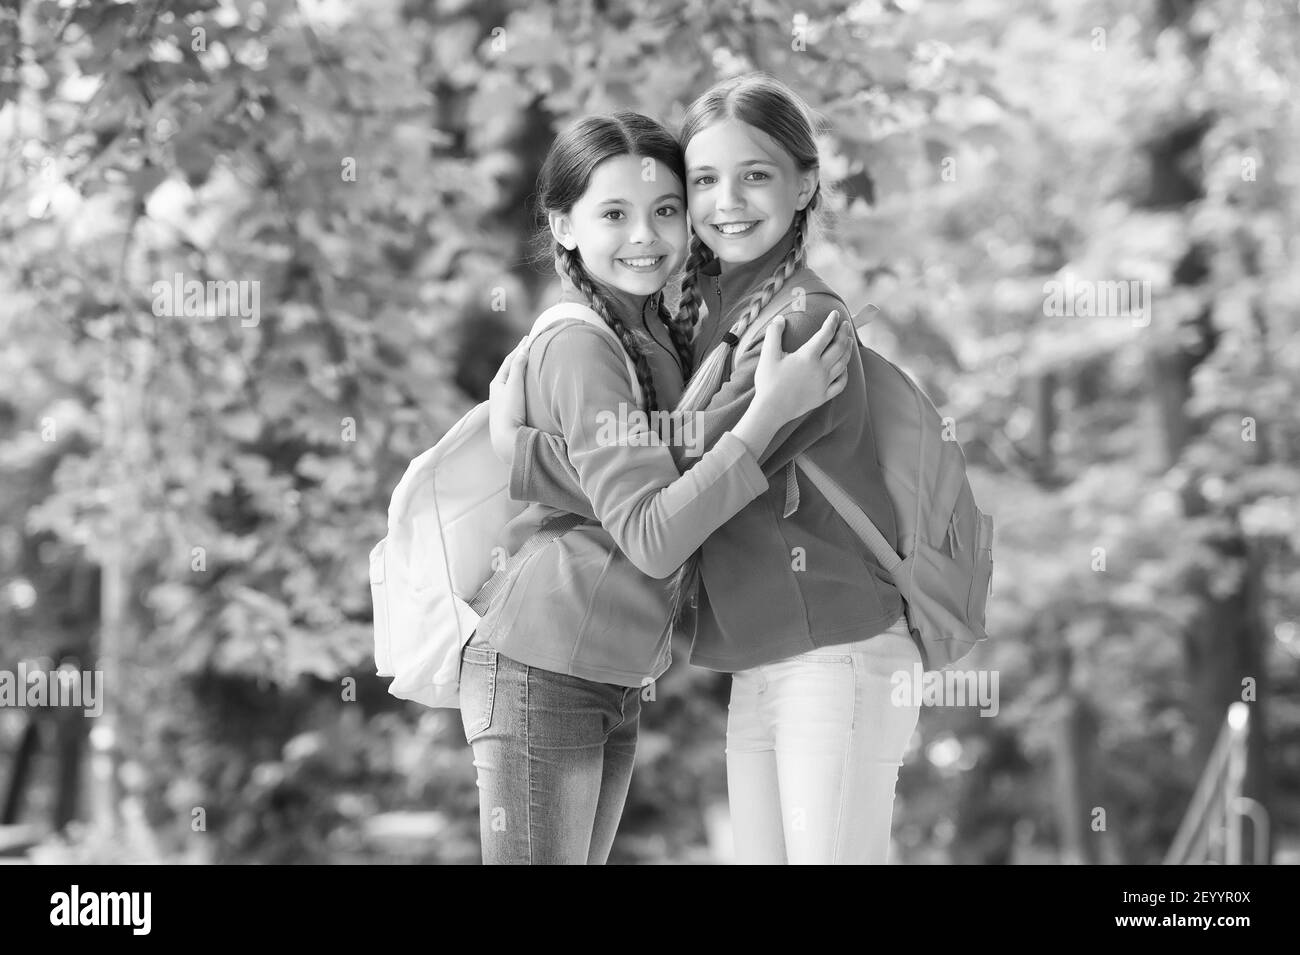 Mädchen Rucksacktouristen Freunde Fleece Kleidung Rucksäcke Wald Hintergrund, Reisen zusammen Konzept. Stockfoto